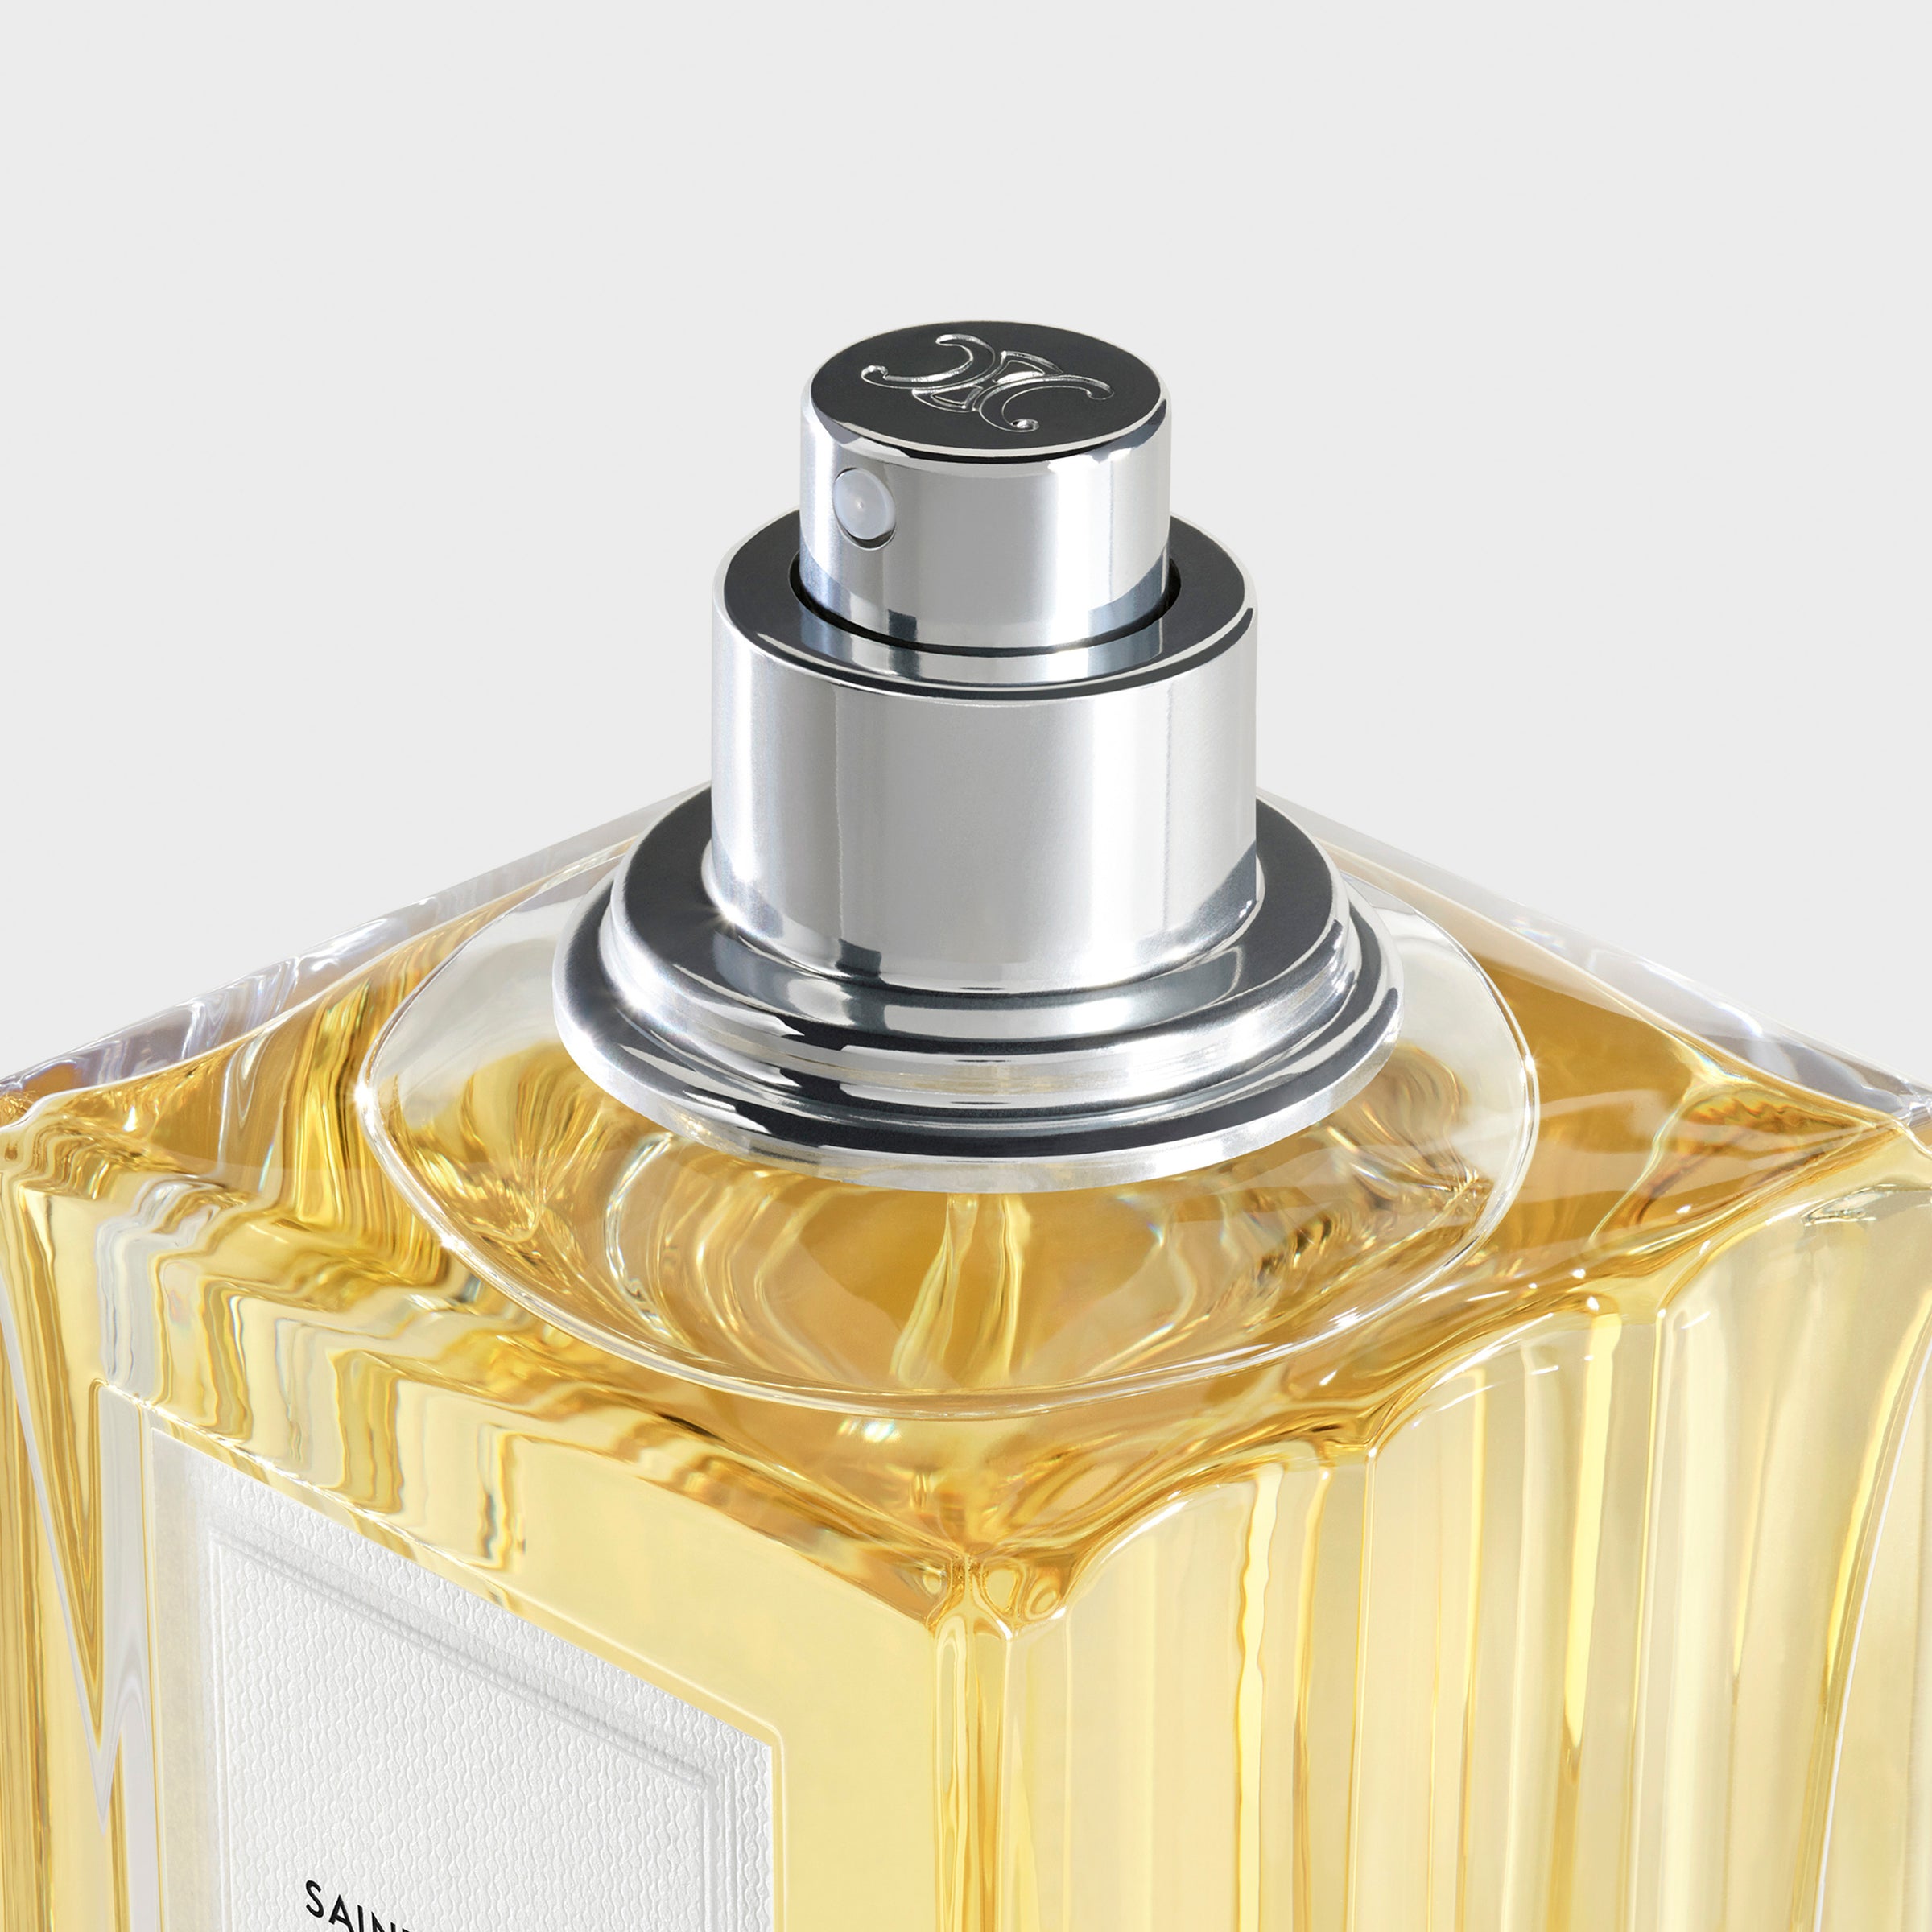 Nước Hoa CELINE Saint-Germain-Des-Prés Eau De Parfum #200 mL